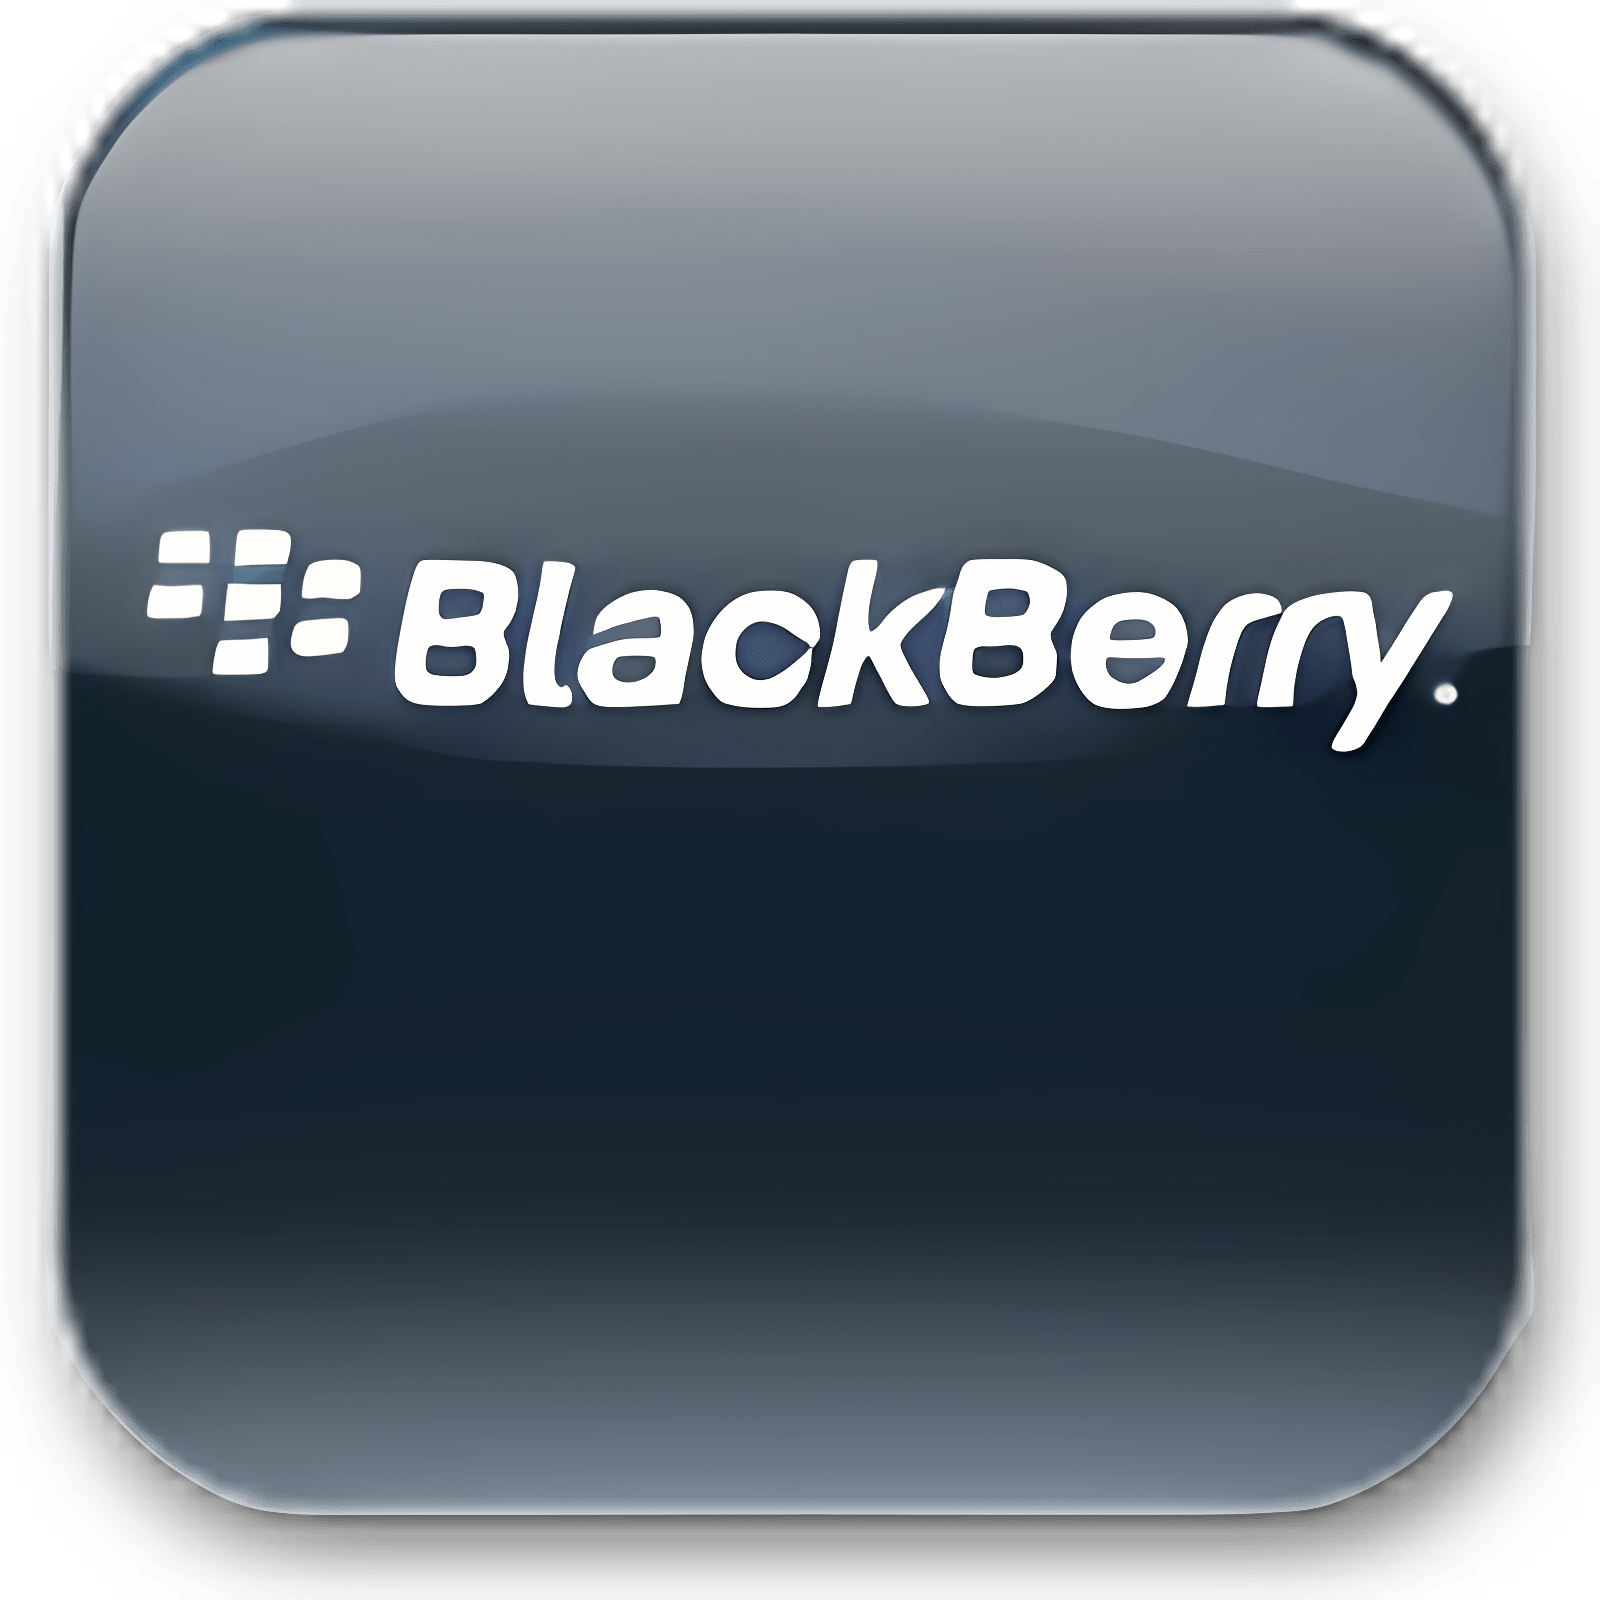 blackberry desktop manager upgrade to version 6